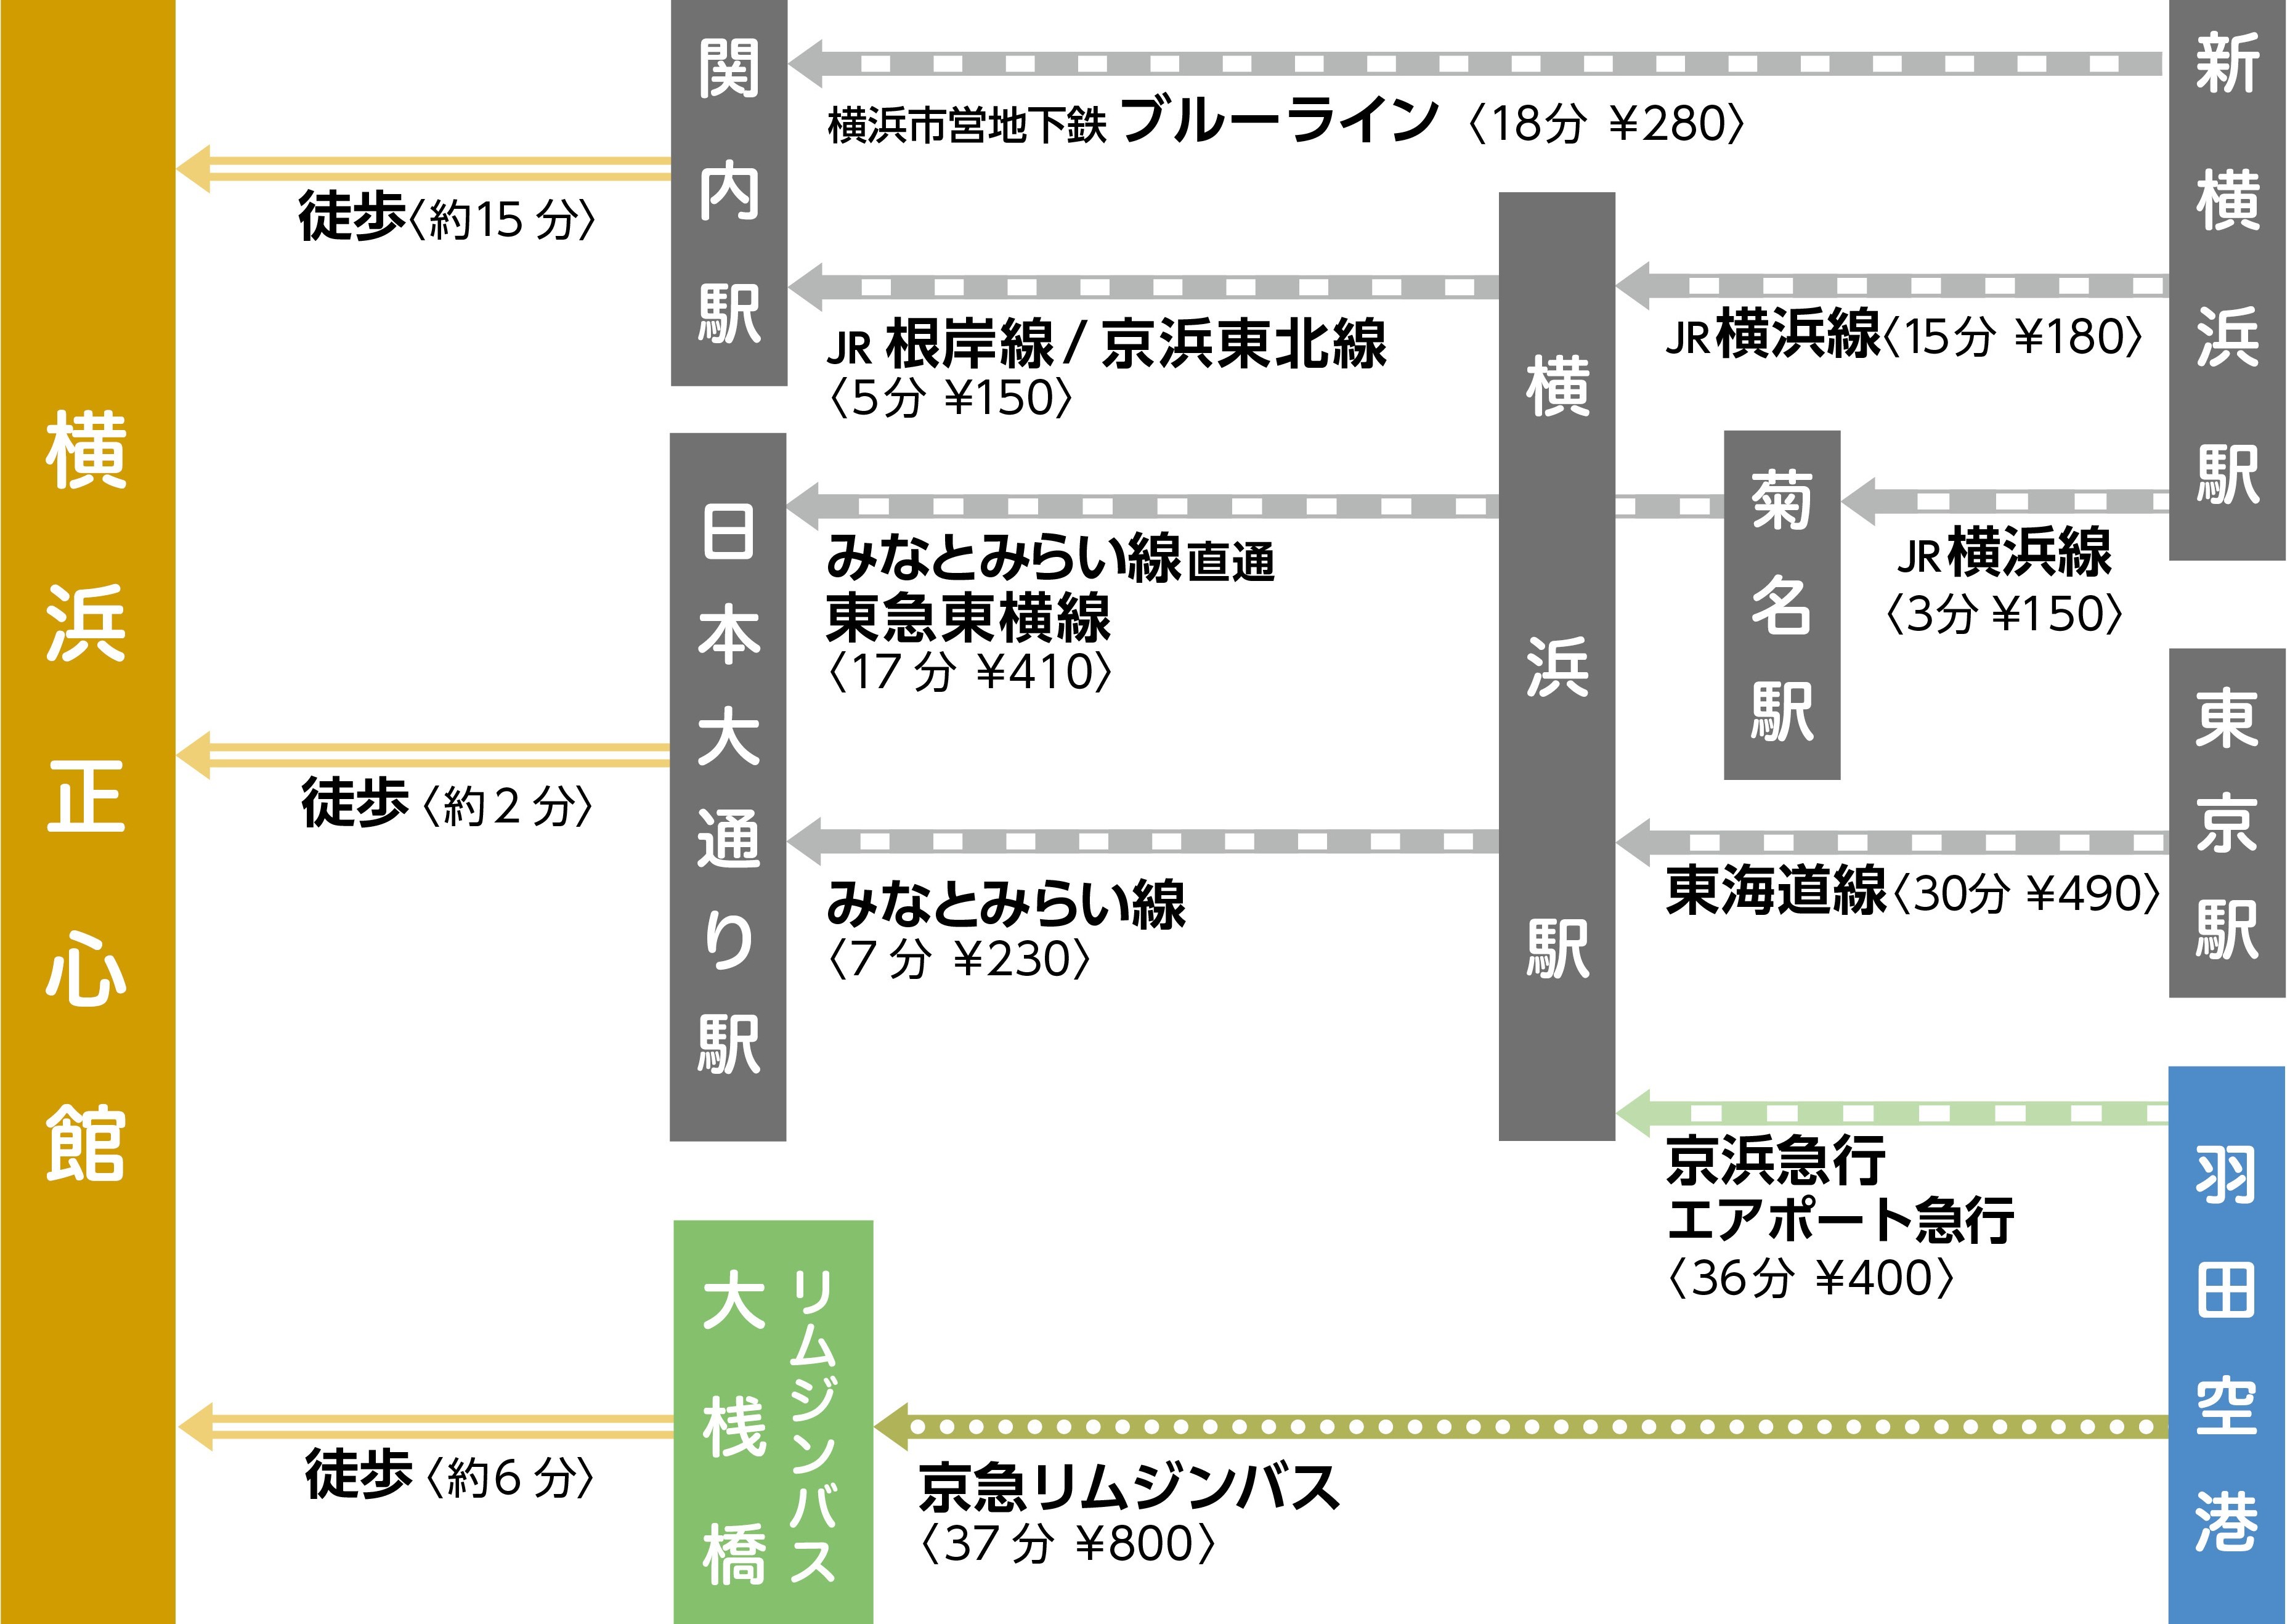 横浜正心館 経路マップ